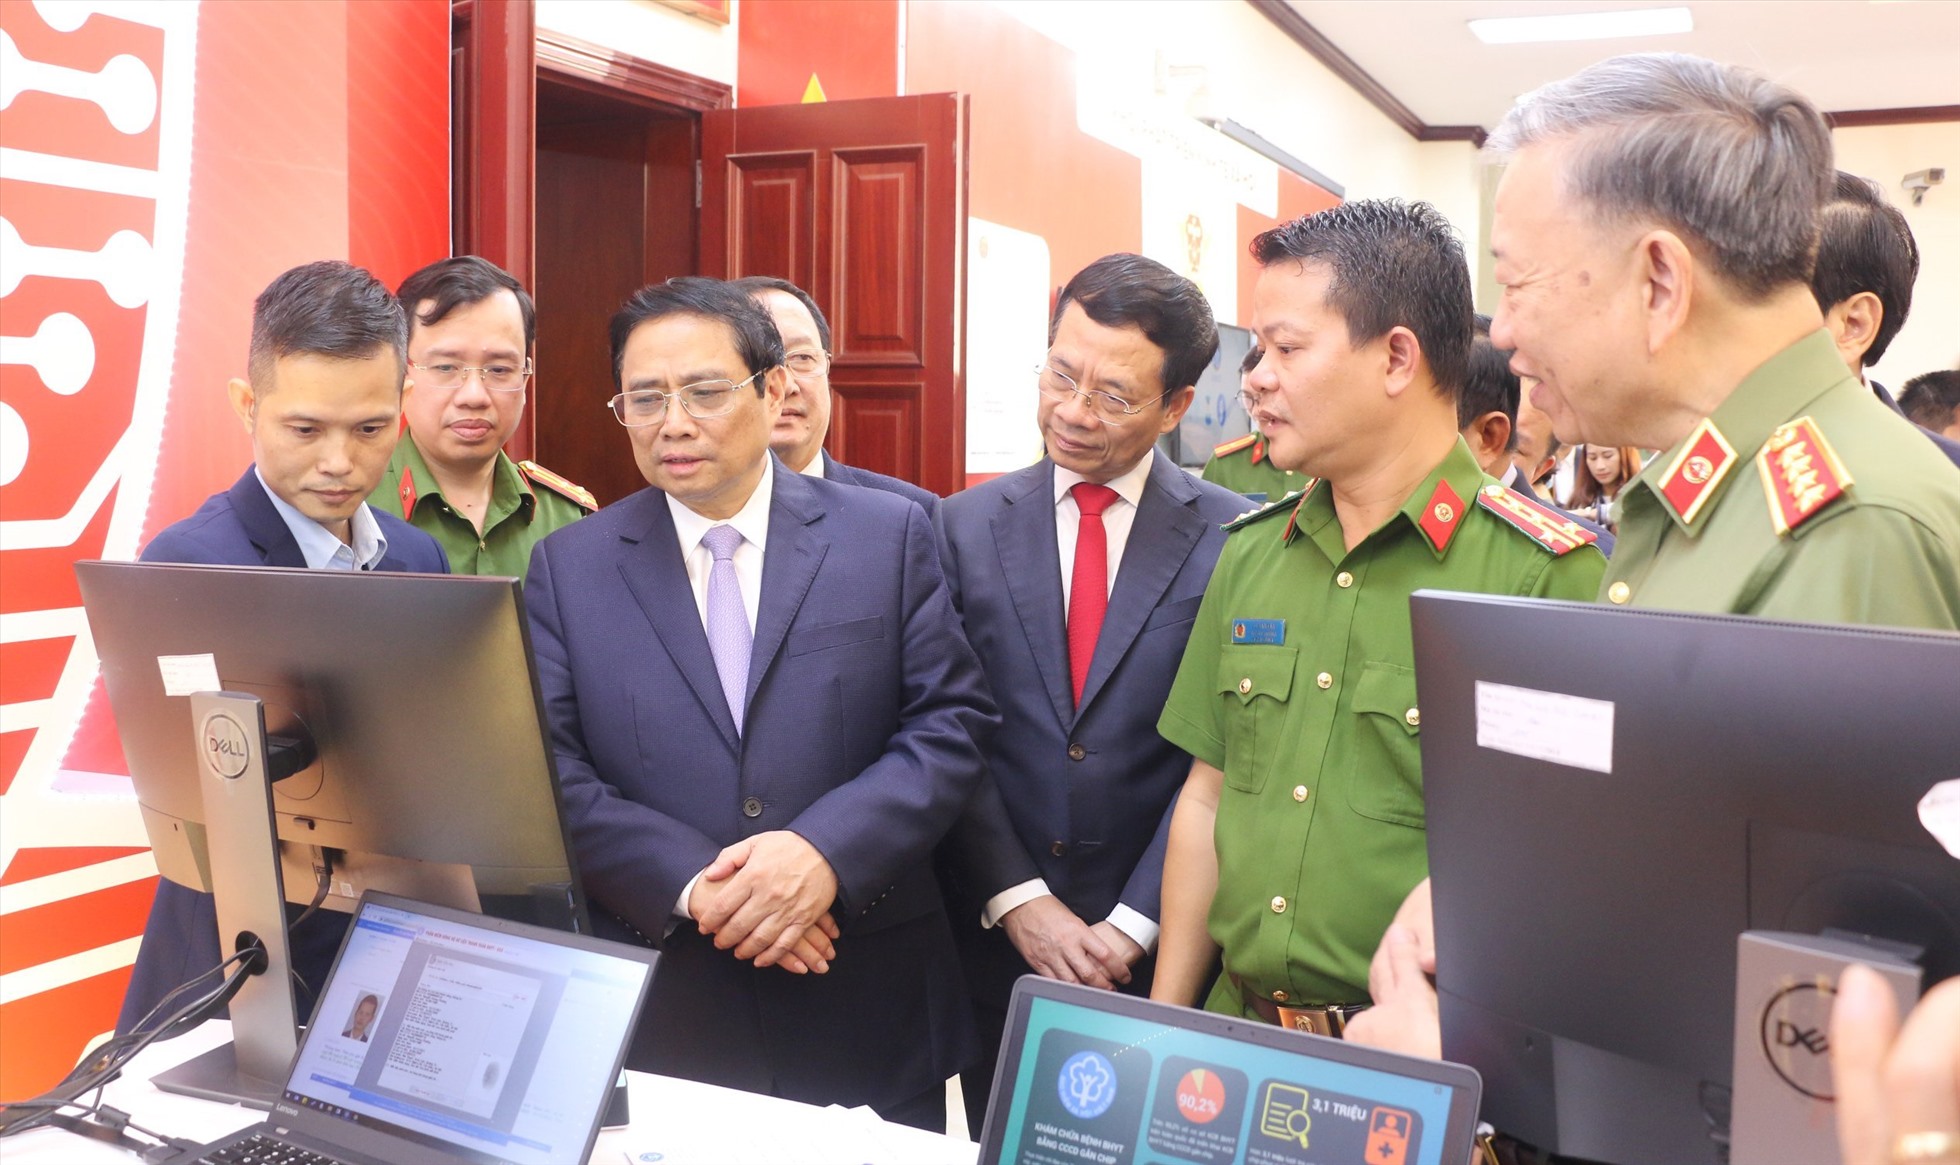 Thủ tướng Chính phủ Phạm Minh Chính và các đại biểu thăm quan gian trưng bày ứng dụng Căn cước công dân (CCCD) gắn chíp trong khám chữa bệnh BHYT.